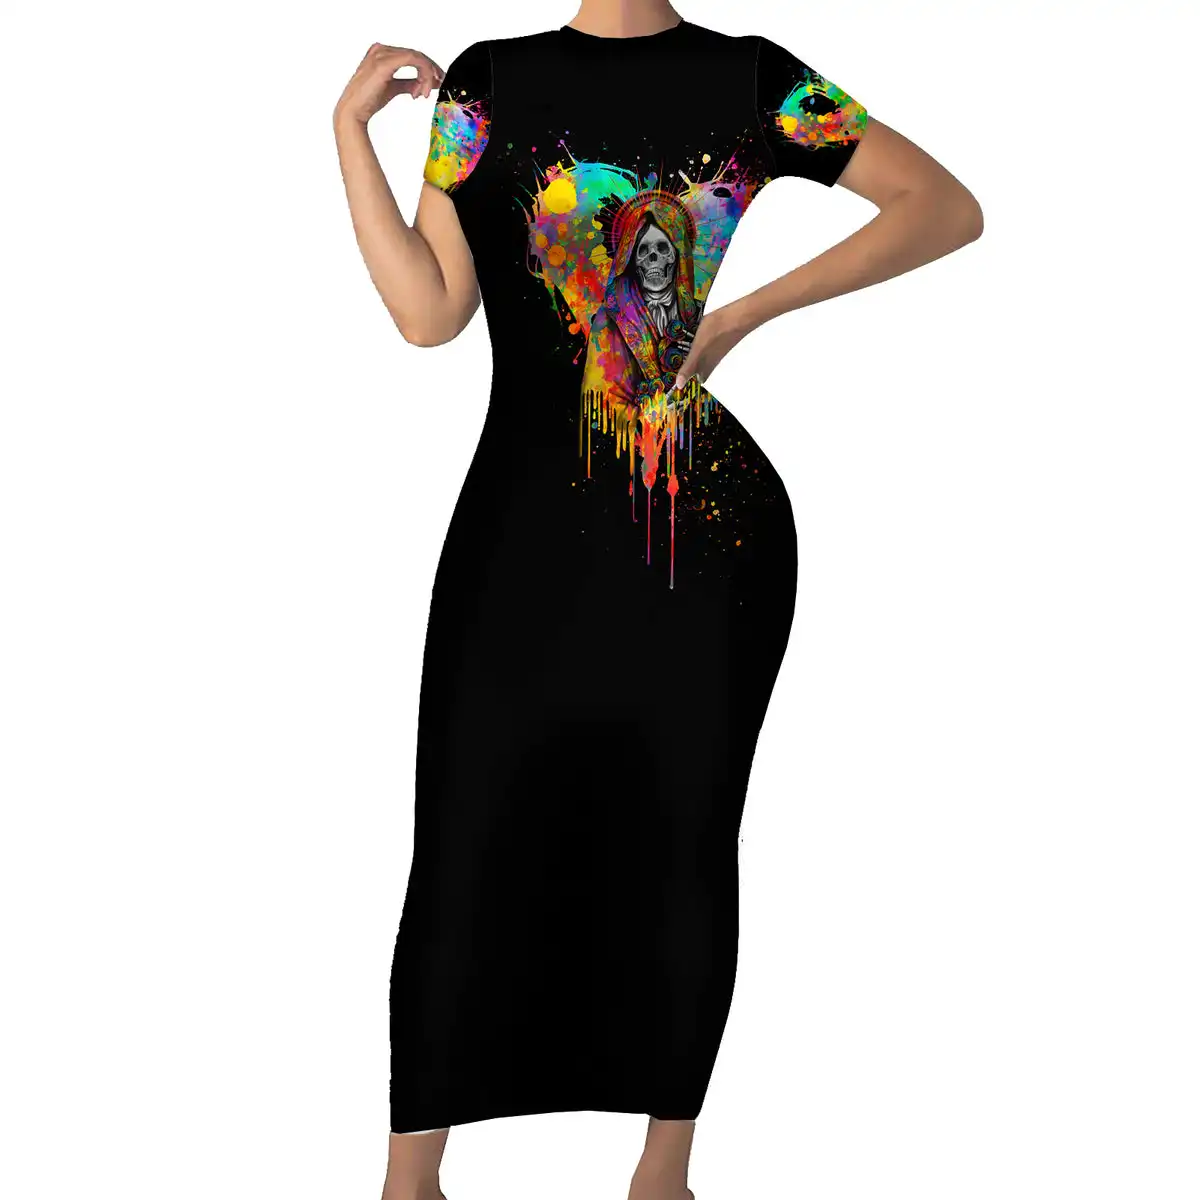 अपने डिज़ाइन को कस्टम करें प्राइड मंथ रेनबो लव स्टाइल लव इज़ लव प्राइड बॉडीकॉन ड्रेस शॉर्ट स्लीव महिलाओं की ड्रेस